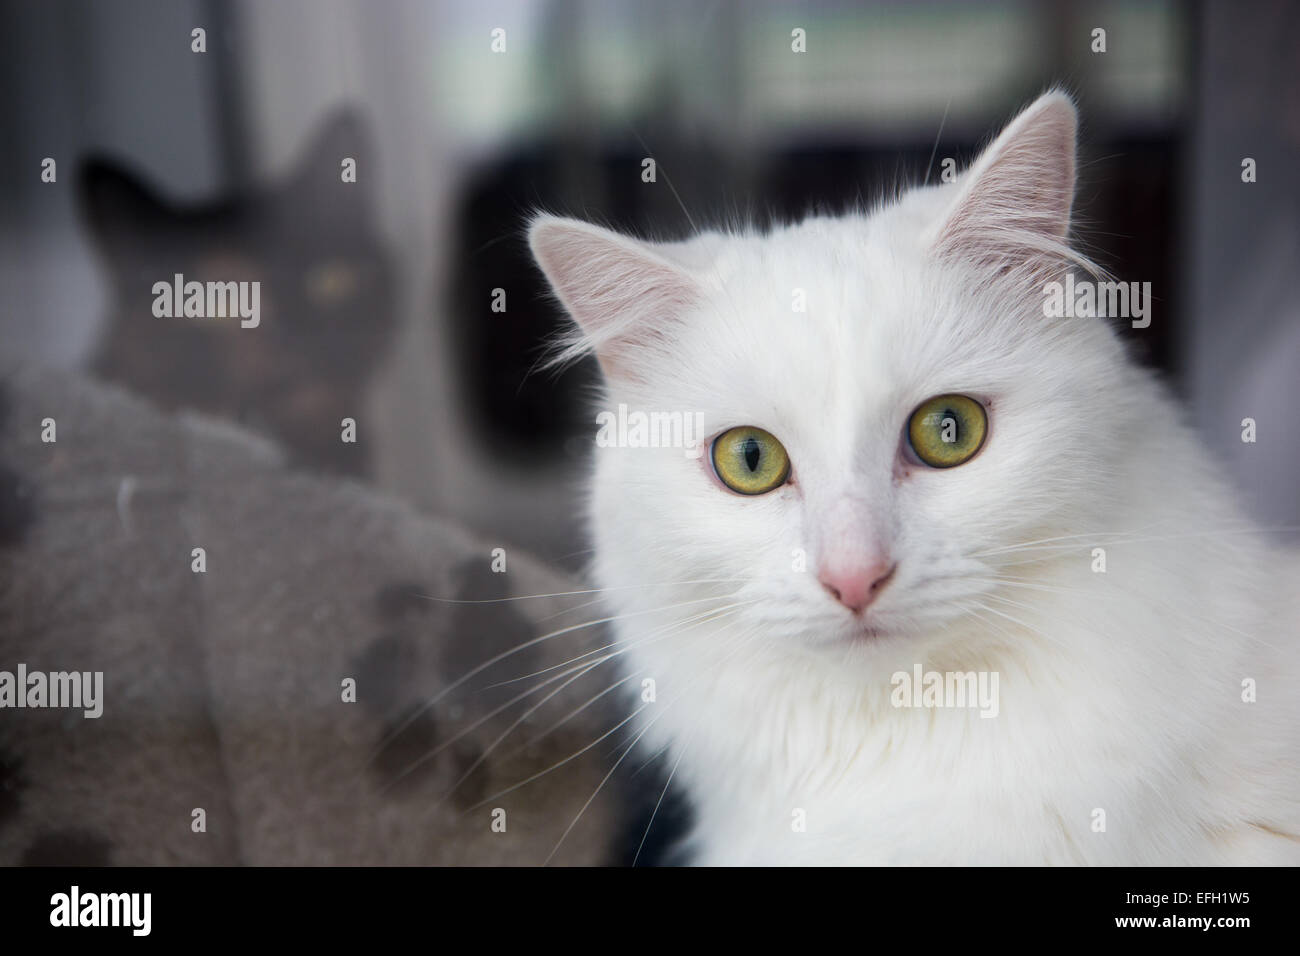 Close-up weiße Katze mit grünen Augen mit schwarzer Katze im Hintergrund  Stockfotografie - Alamy